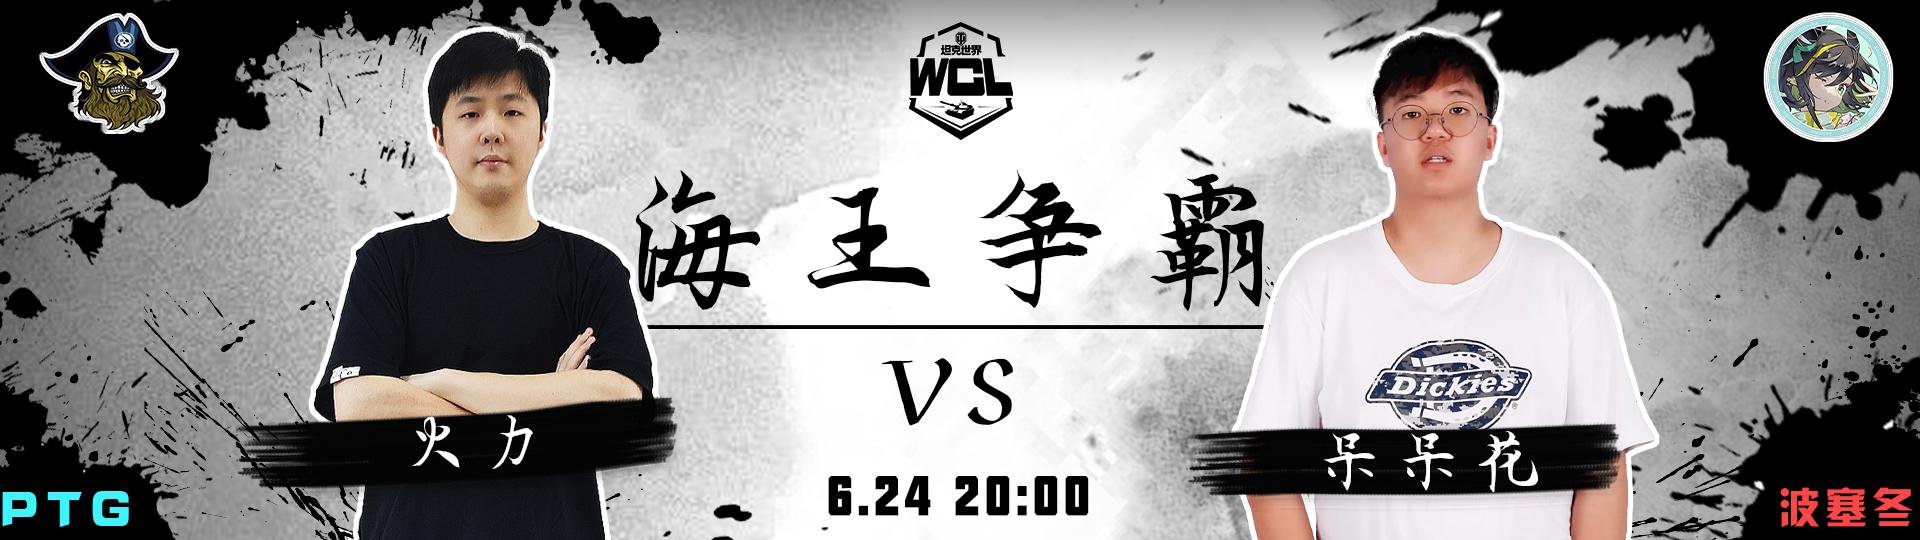 海神vs海盗  《坦克世界》WCL夏季赛第四周战斗明日打响